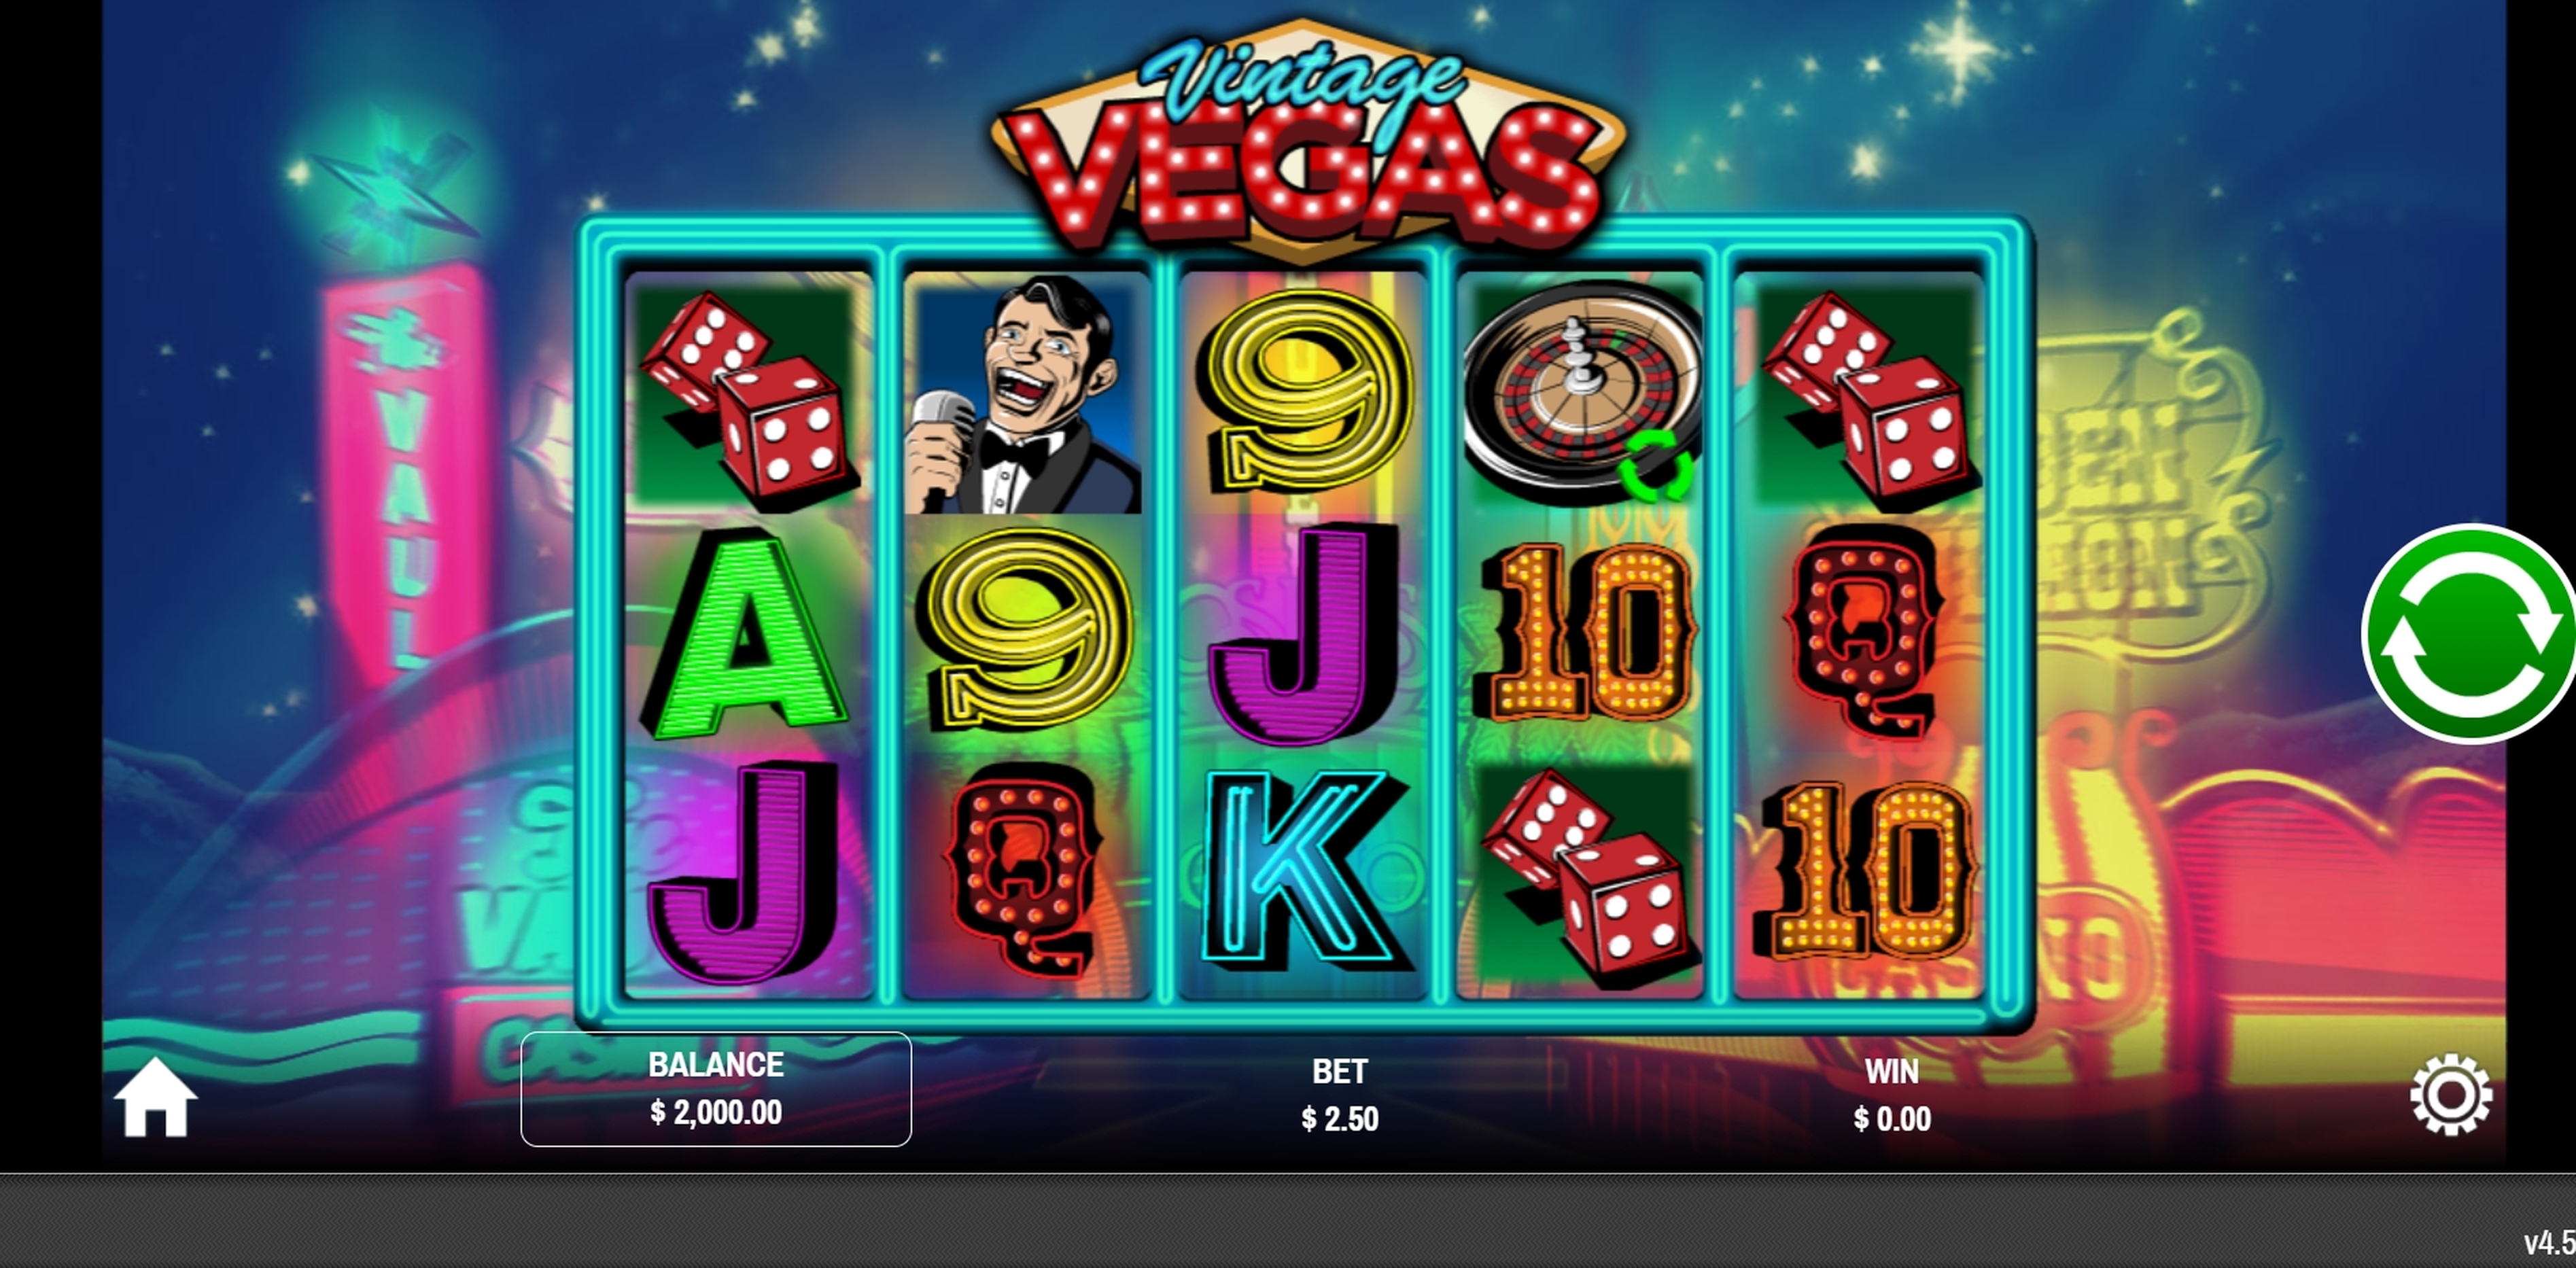 Reels in Vintage Vegas Slot Game by Rival